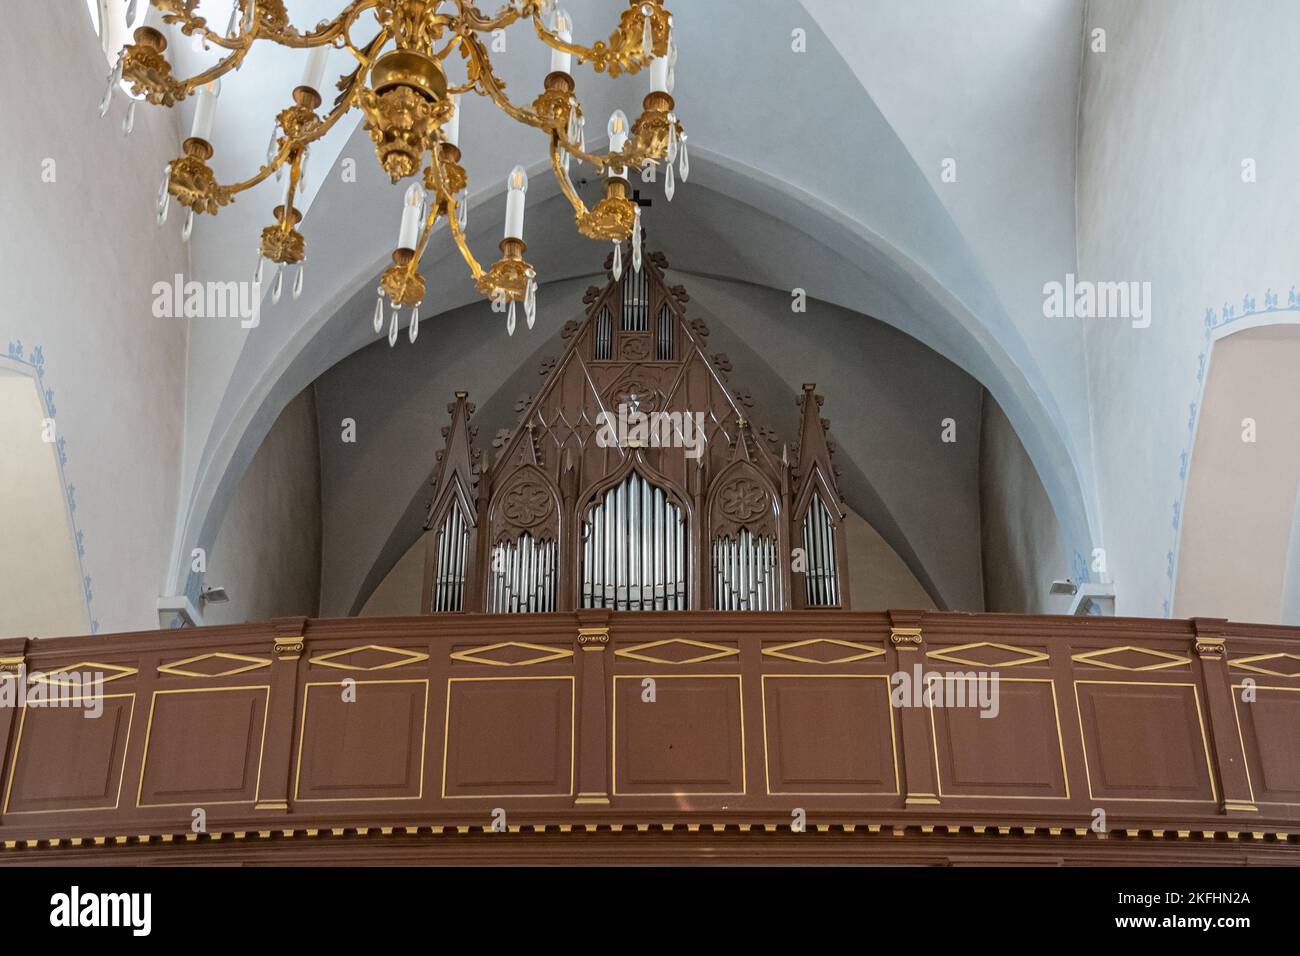 Estland, Tallinn - 21. Juli 2022: In der St. Peter und St. Paul Kathedrale. Orgel auf dem Dachboden über dem Eingang. Silberpfeifen in geschnitztem dunklem Holz ag Stockfoto